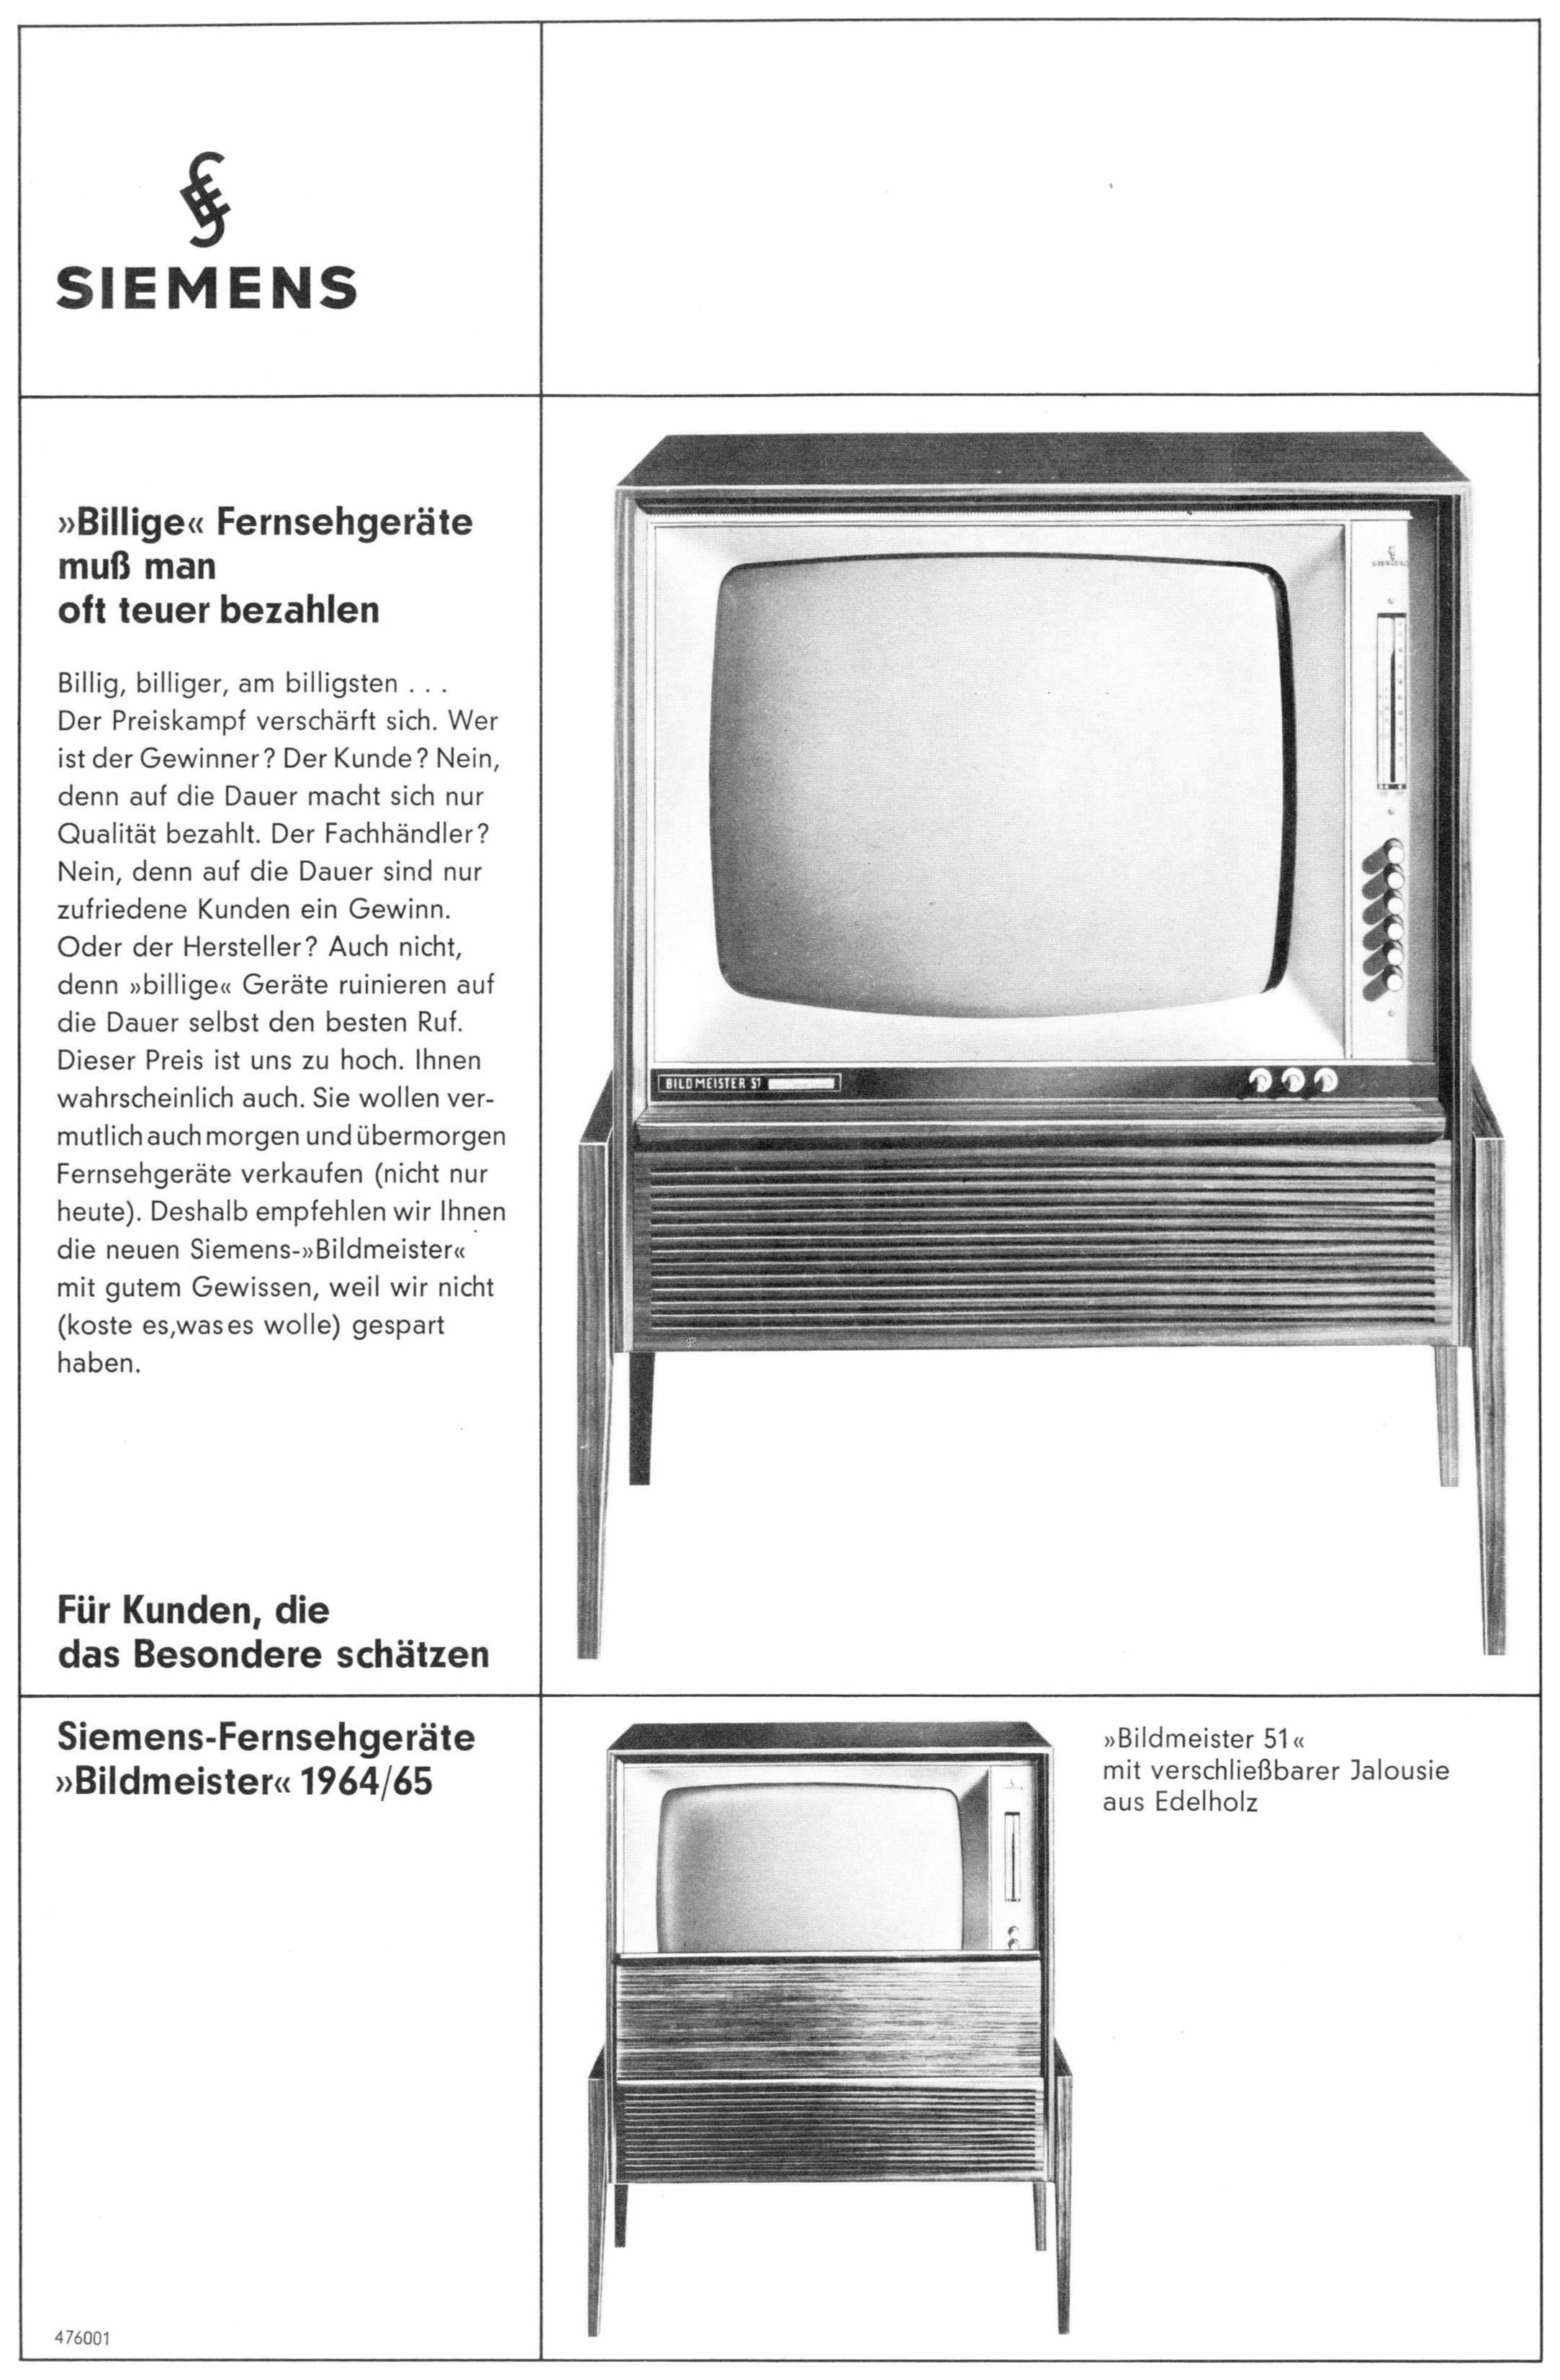 Siemens 1964 0.jpg